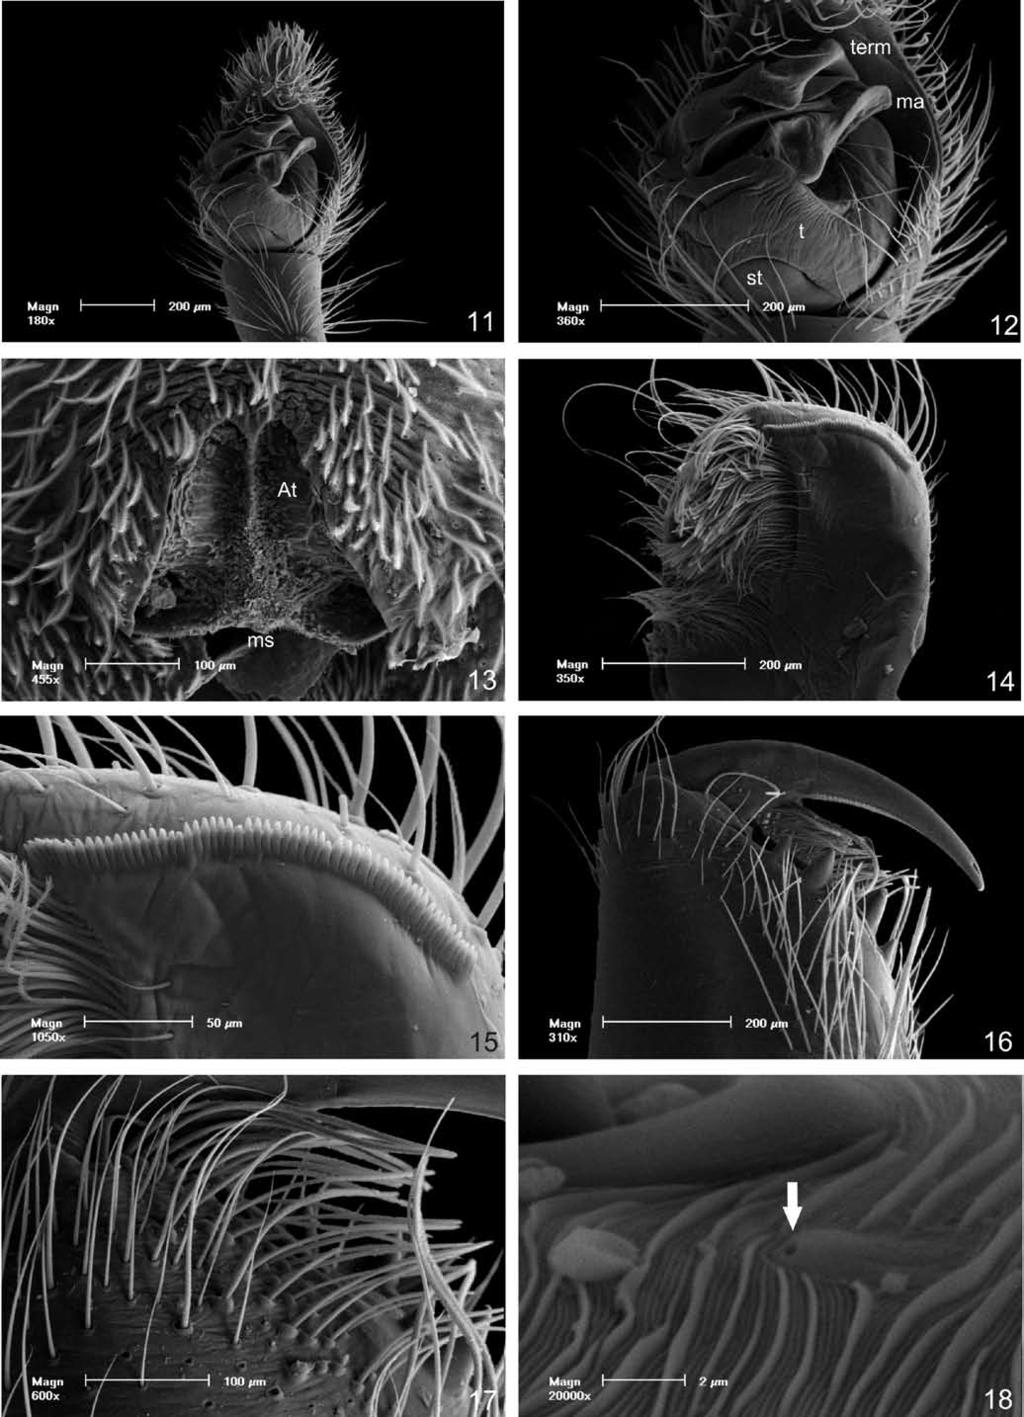 Cruz da Silva & Lise Figures 11 18. Morphological details of Arctosa sapiranga sp. nov. (11 12).